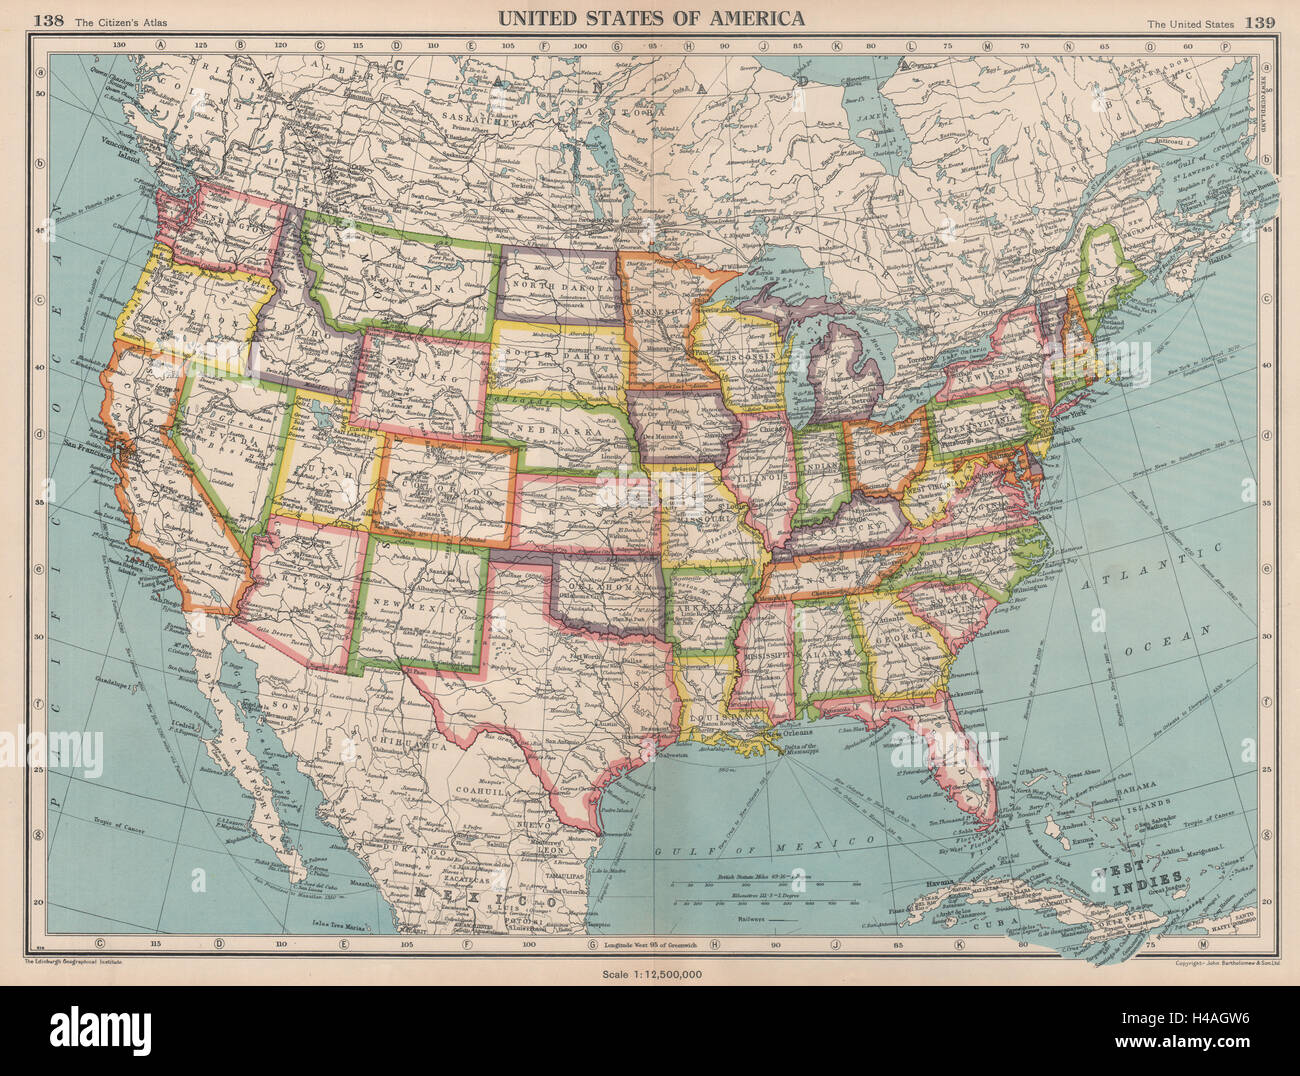 Usa United States Of America State Map Bartholomew 1944 Old